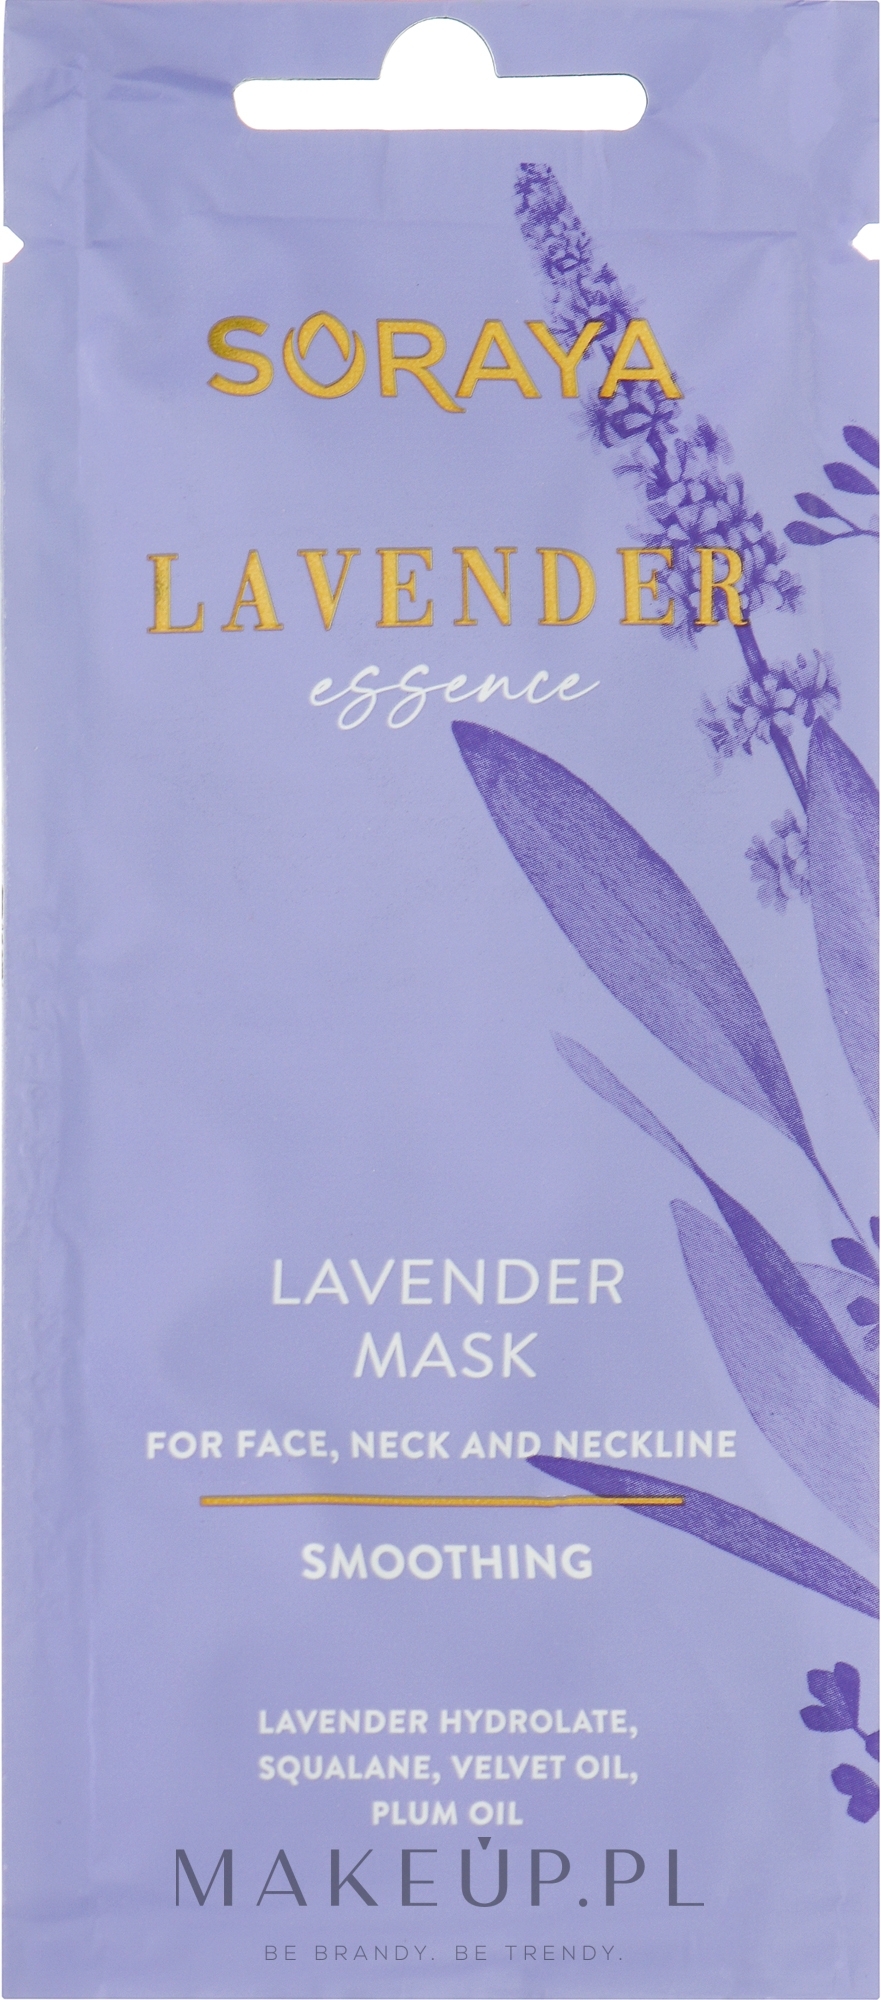 Lawendowa maseczka wygładzająca na twarz, szyję i dekolt - Soraya Lavender Essence — Zdjęcie 8 ml